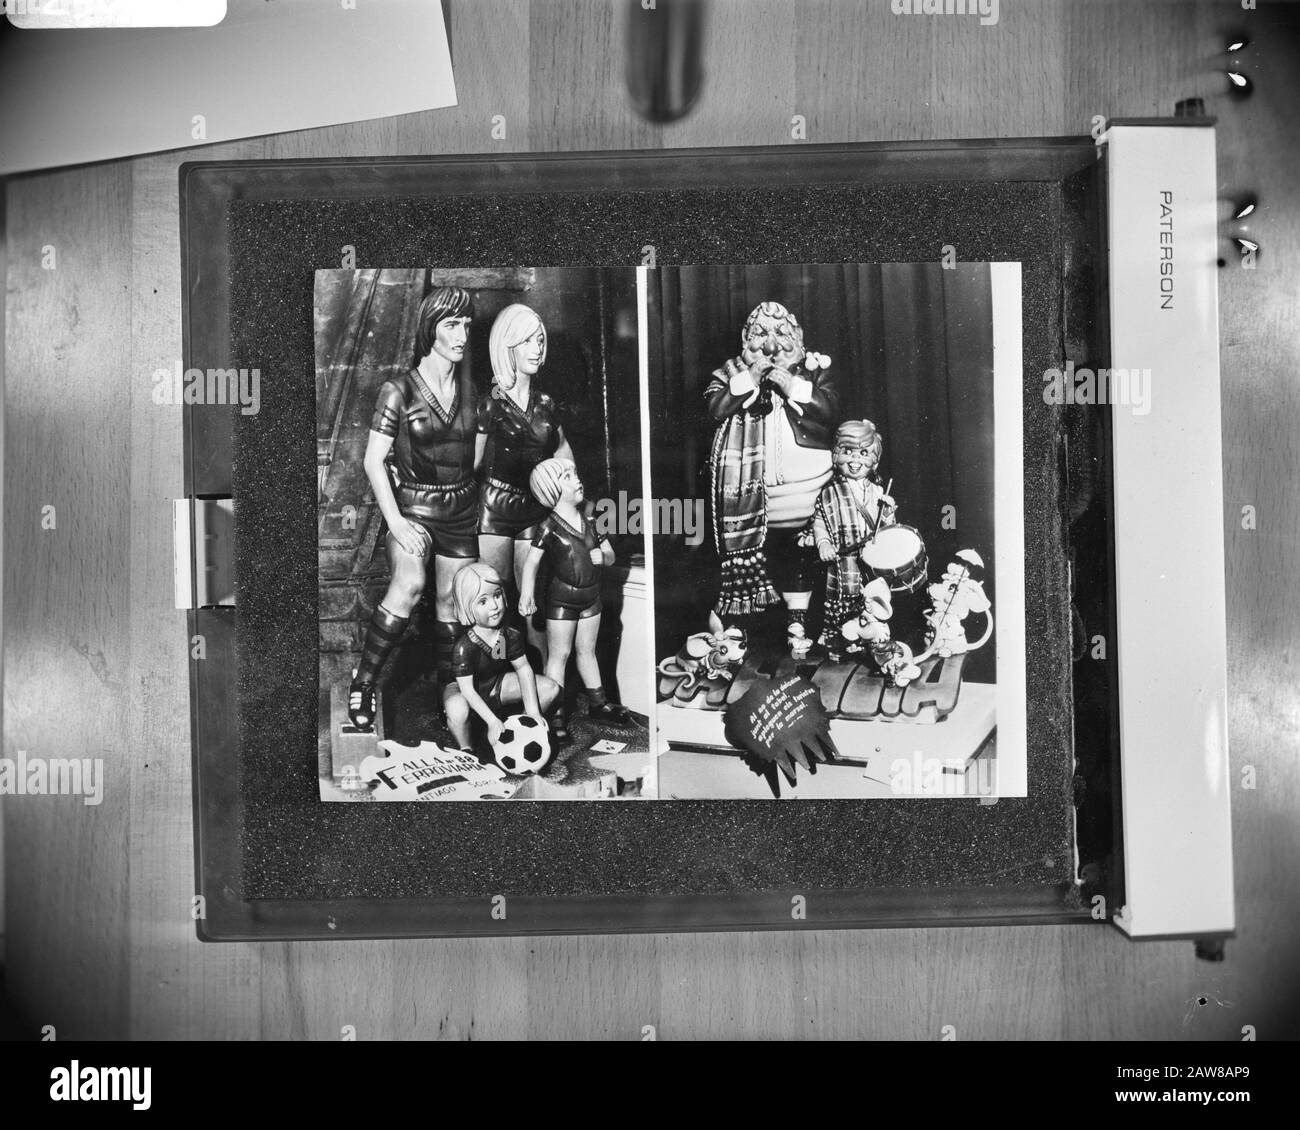 Ninots (Puppen) aus der Familie Cruyff (links) zum Fallas Festival in Valencia Datum: 10. März 1977 Ort: Spanien, Valencia Schlüsselwörter: Christliche Feiertage, Familien, Festivals, Puppen, Name der Fußballperson: Cruyff, Johan Stockfoto